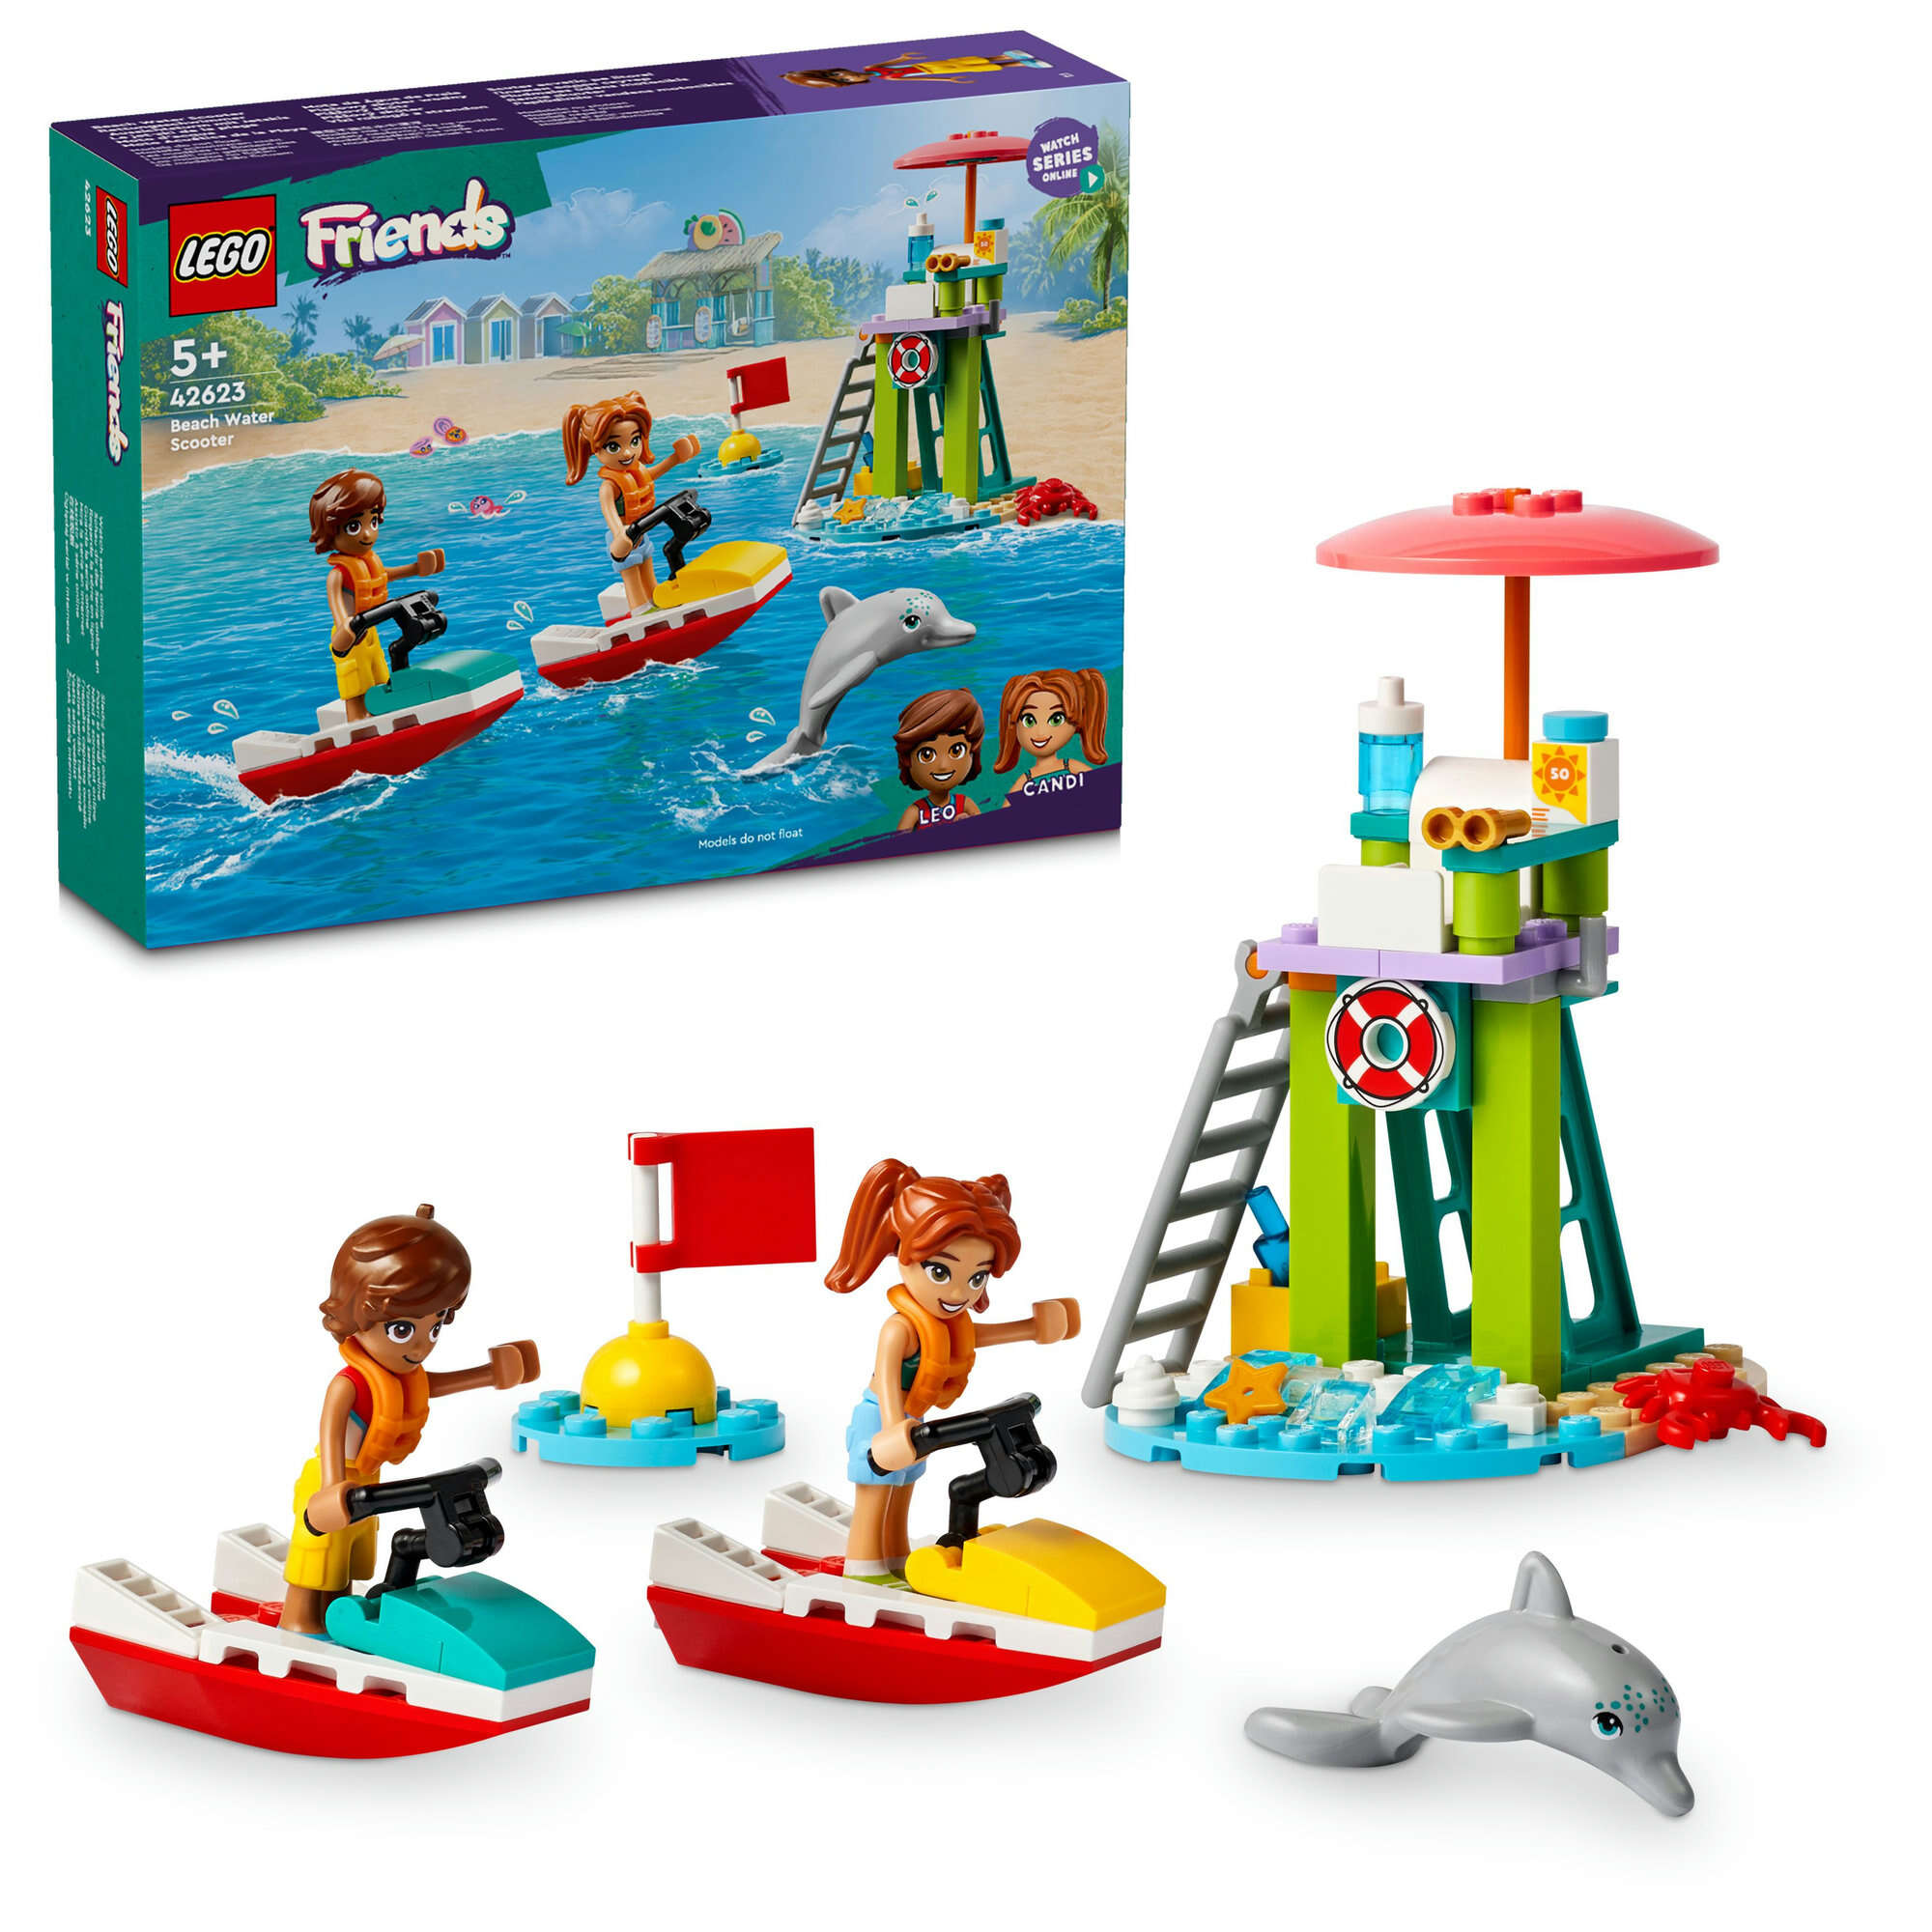 LEGO 42623 Friends Rettungsschwimmer Aussichtsturm mit Jetskis, 2 Spielfiguren